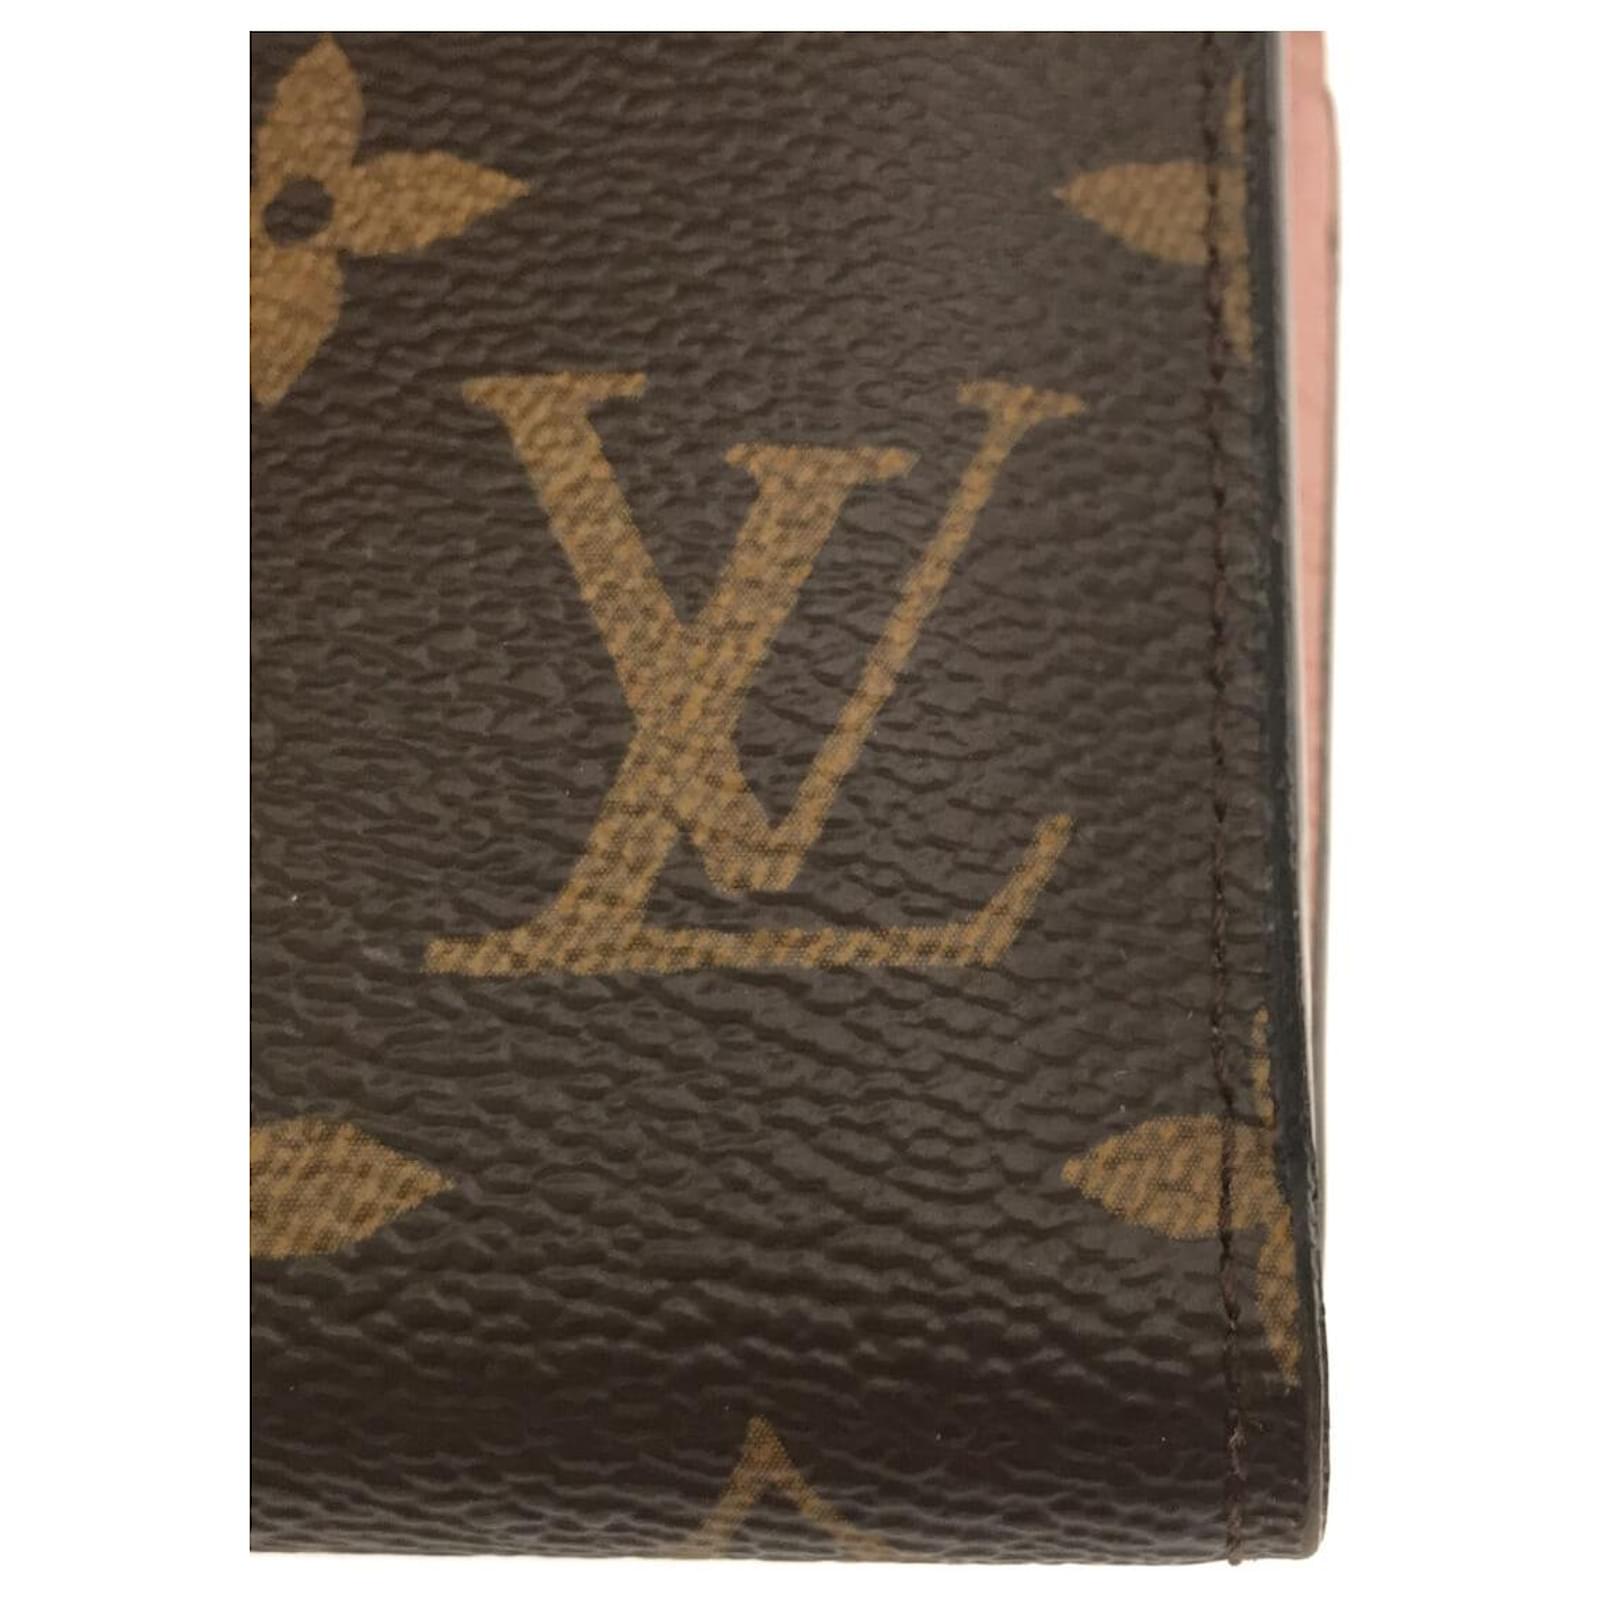 Louis Vuitton Portefeuille Victorine